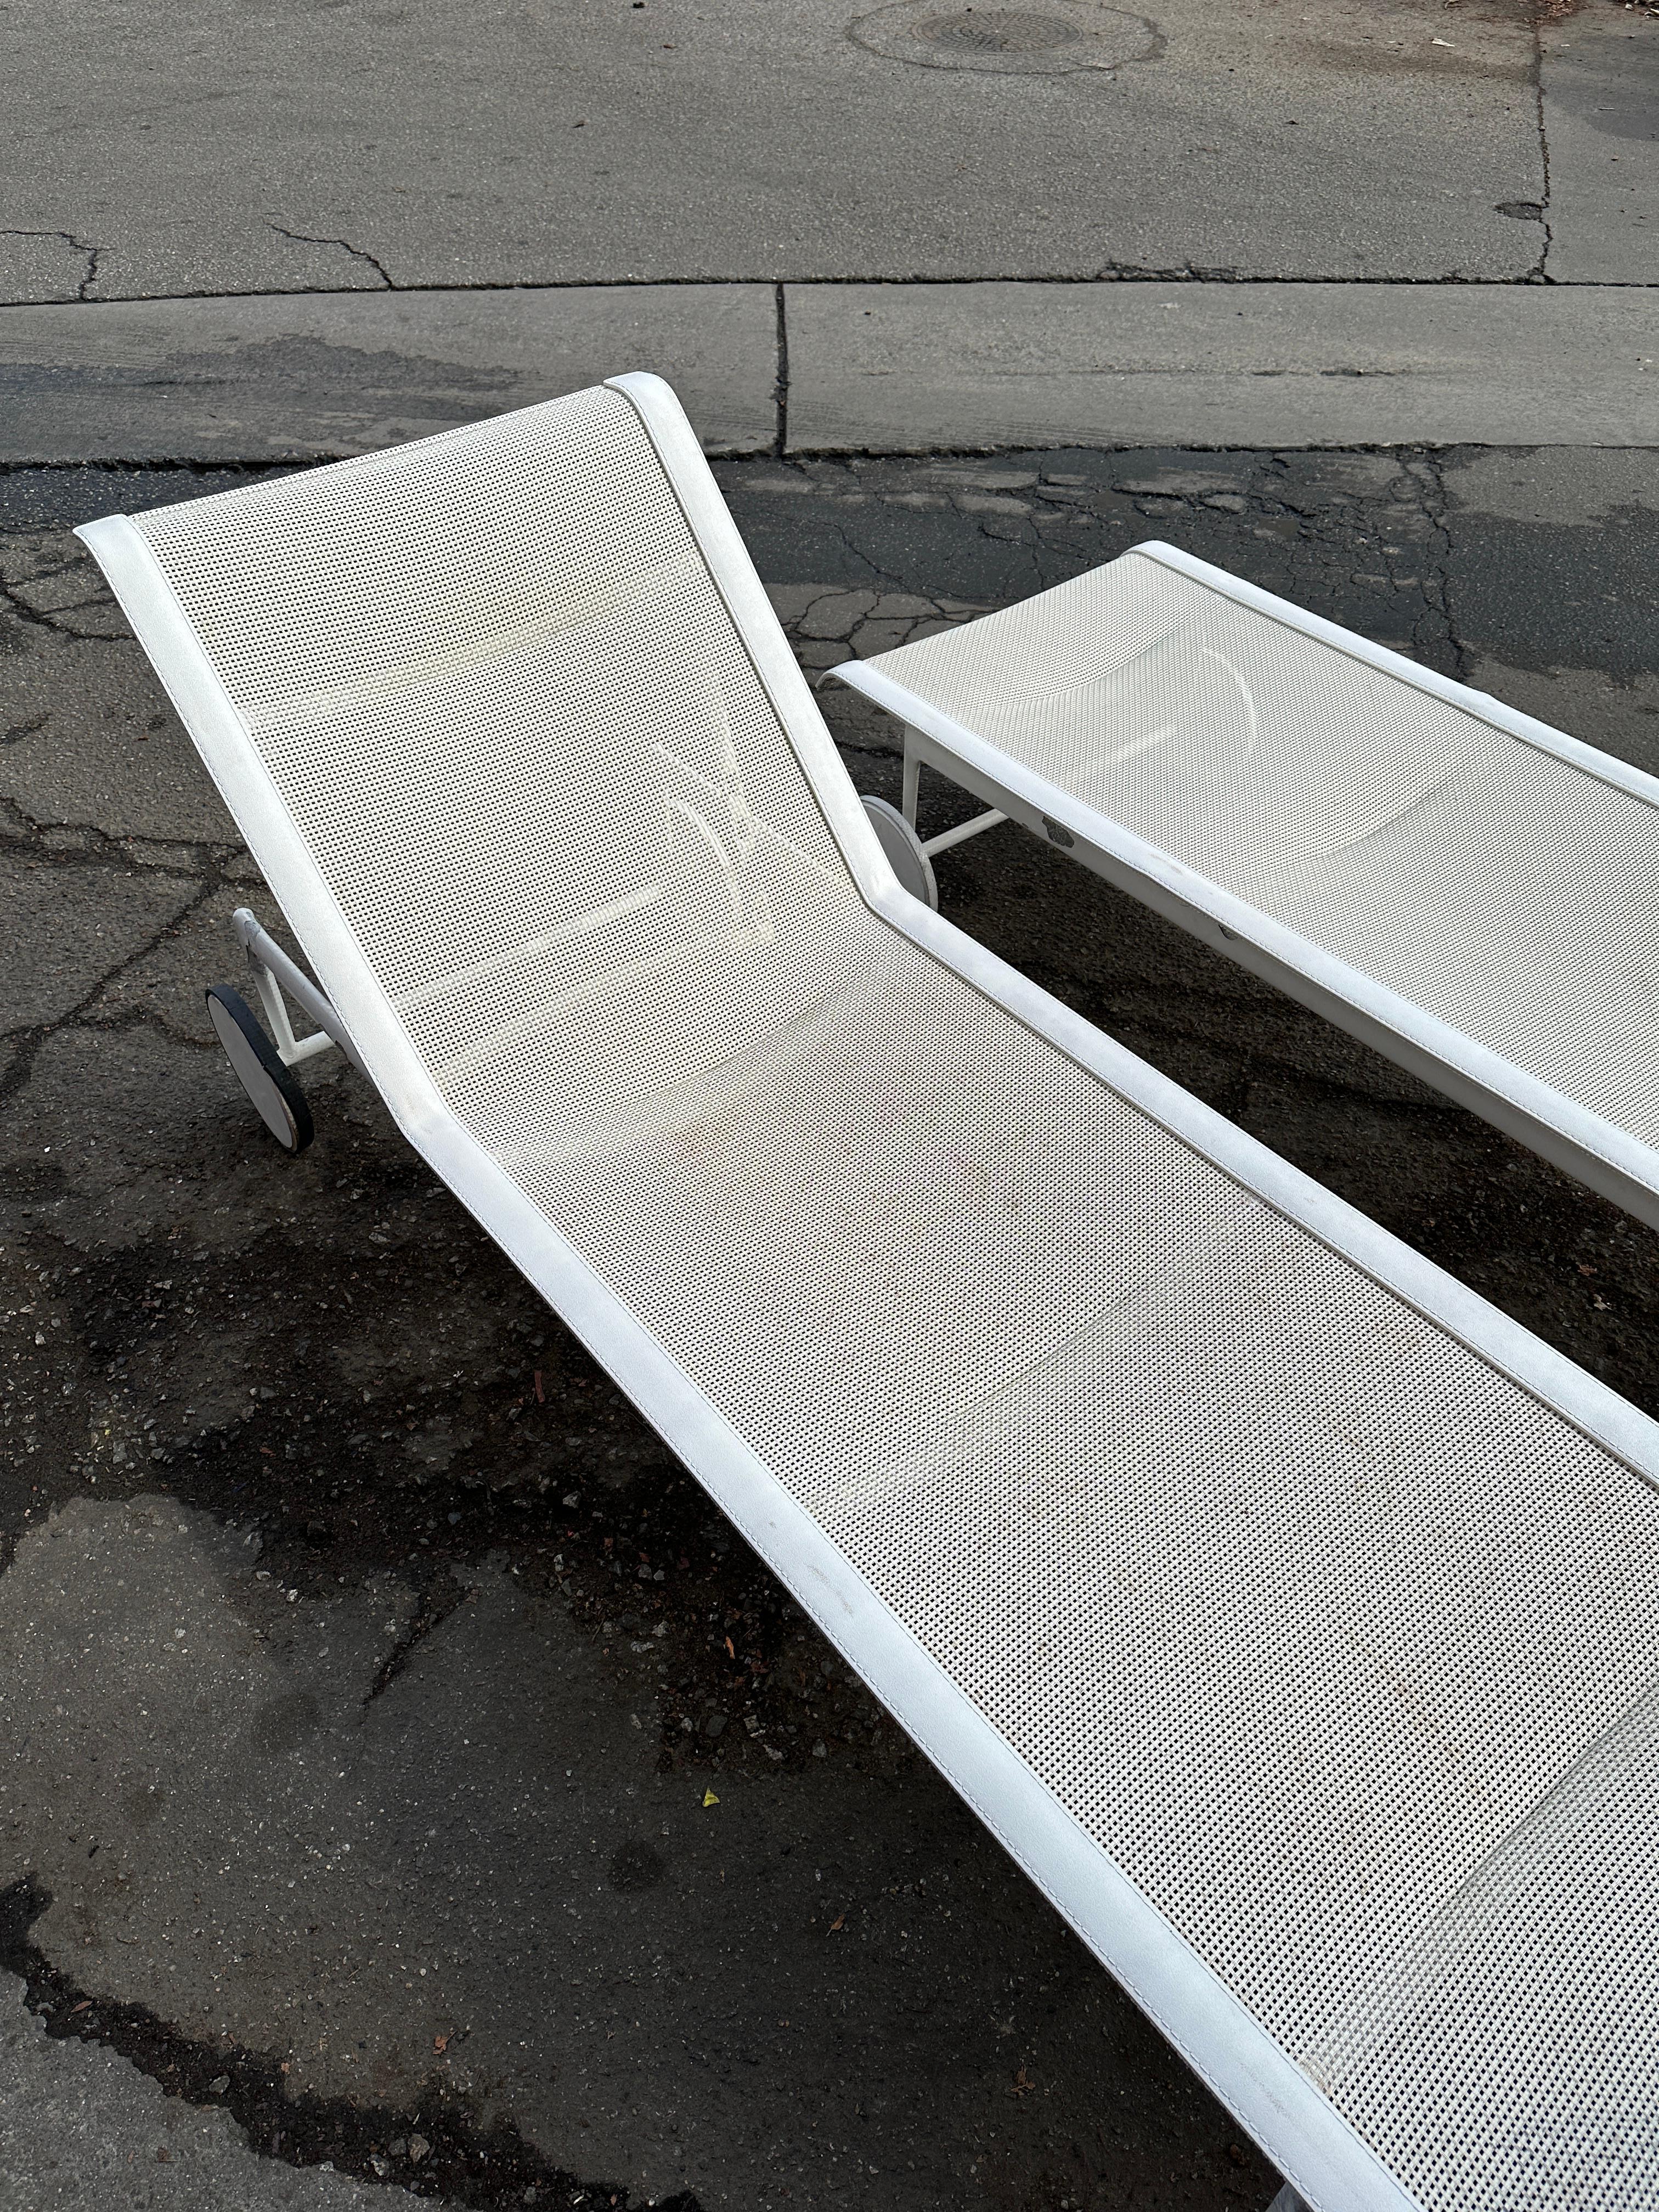 La vente porte sur une chaise longue réglable de Richard Schultz Designs en blanc (deux chaises sont disponibles mais le prix indiqué est pour chacune d'entre elles). 
Dimensions : 76 